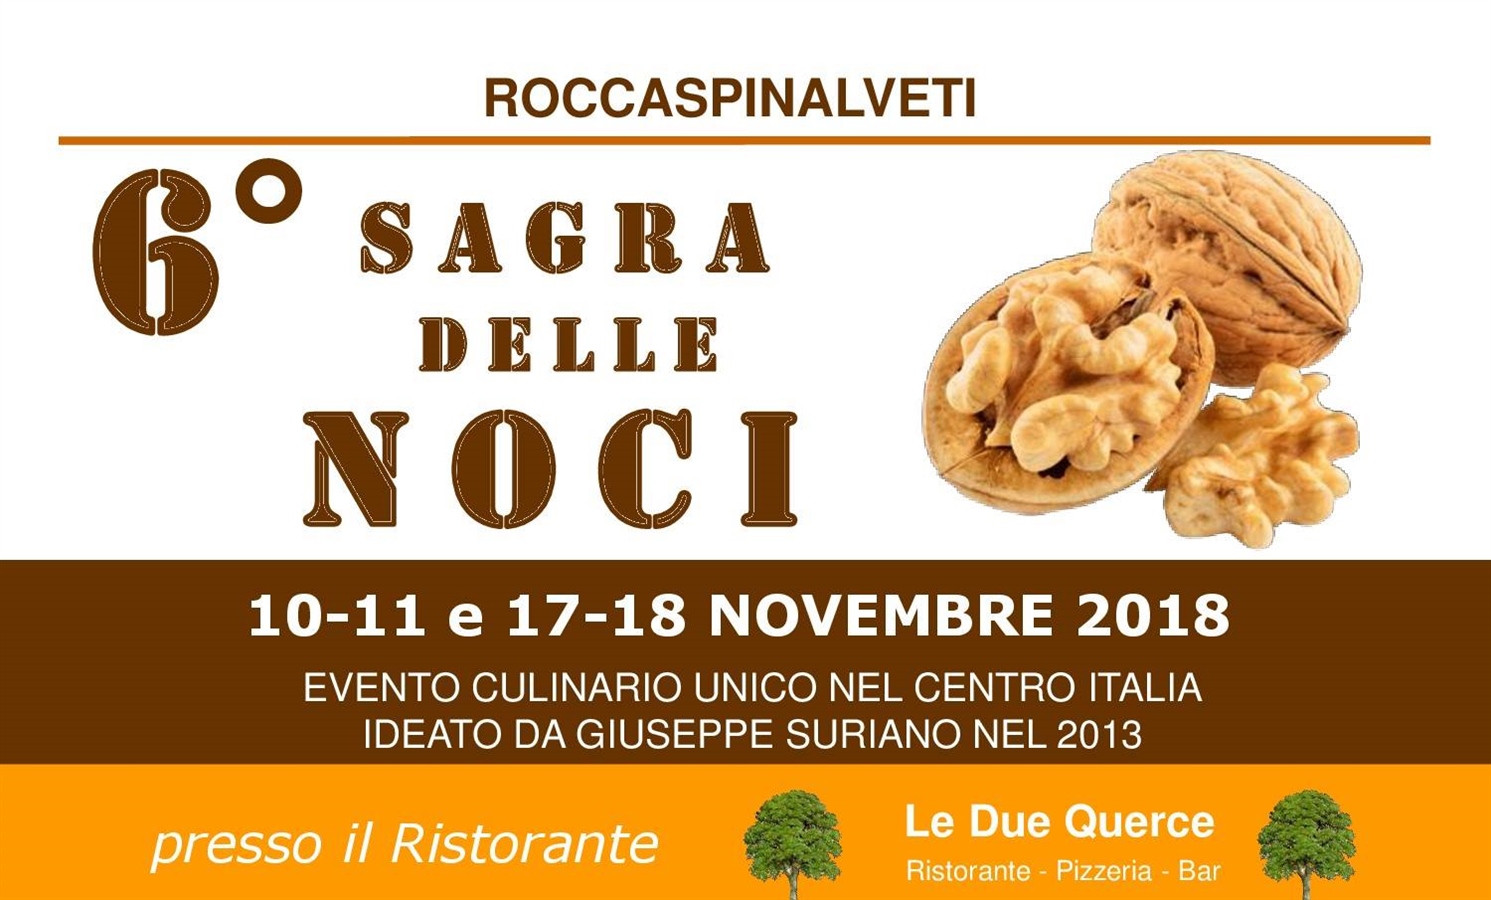 Roccaspinalveti Walnuts Festival - VI Edition